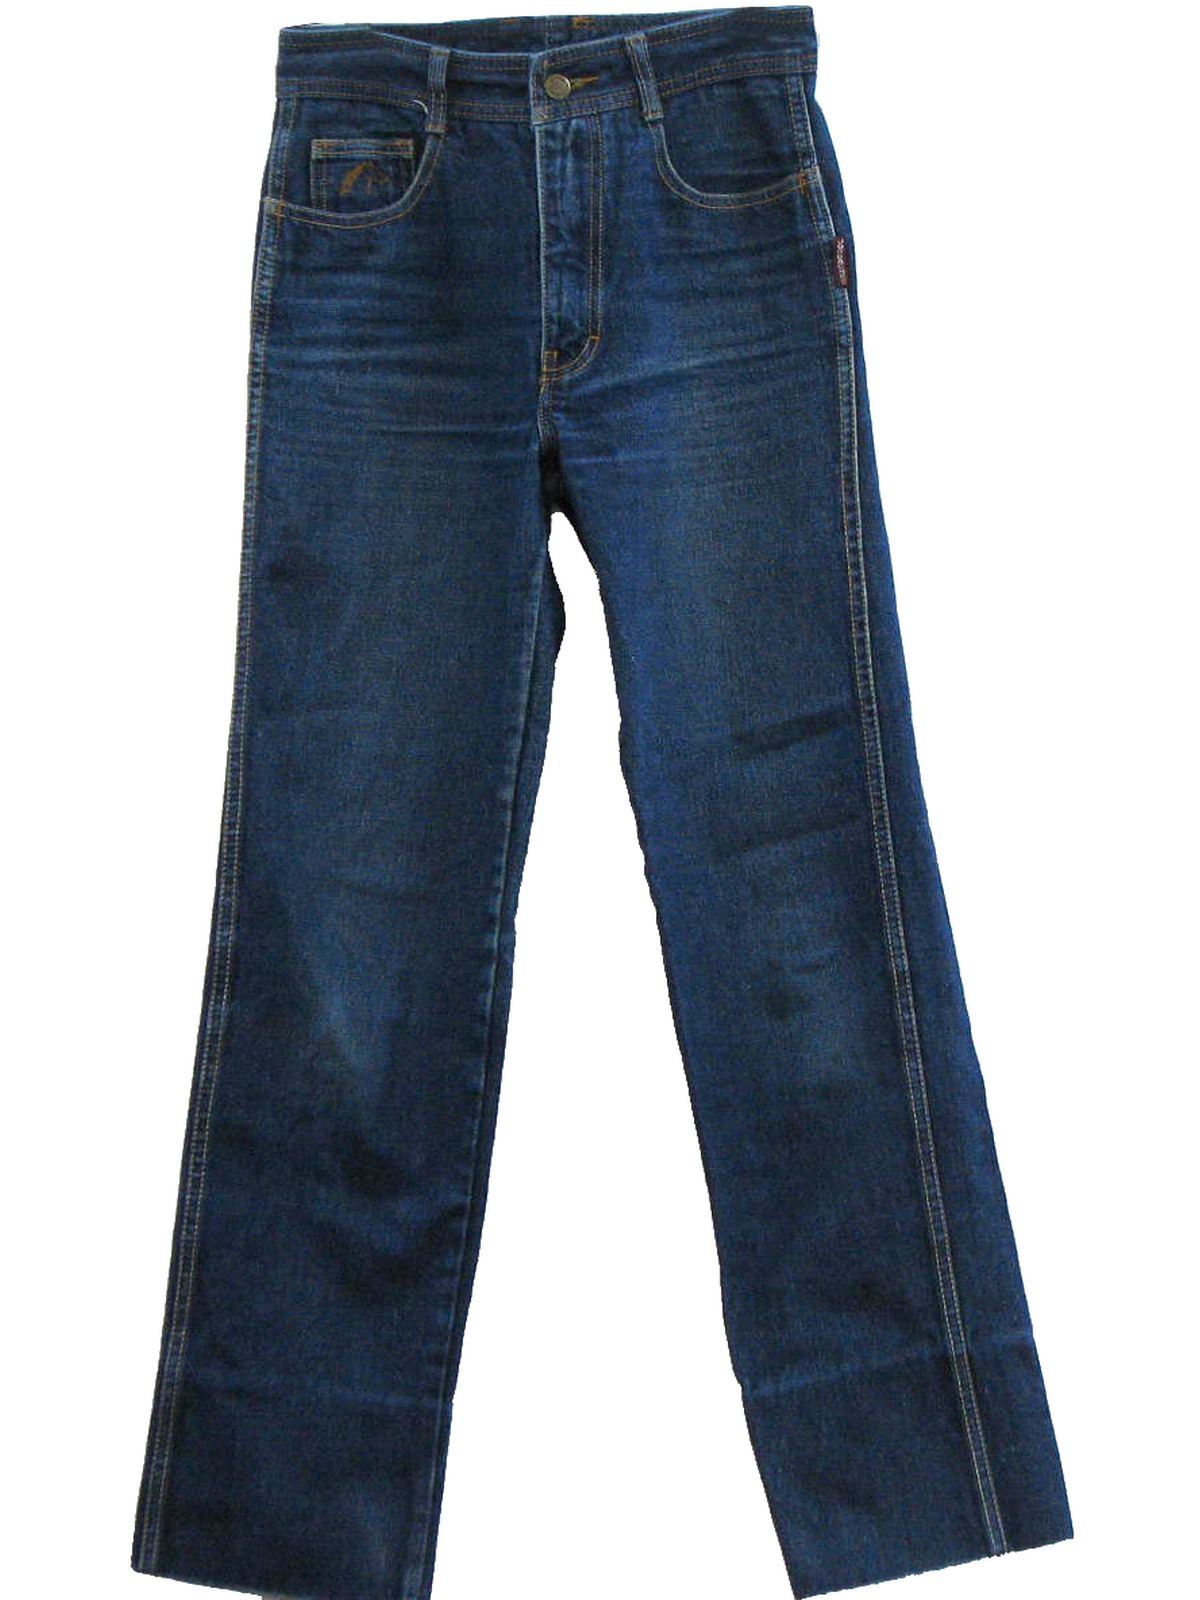 80s jordache jeans